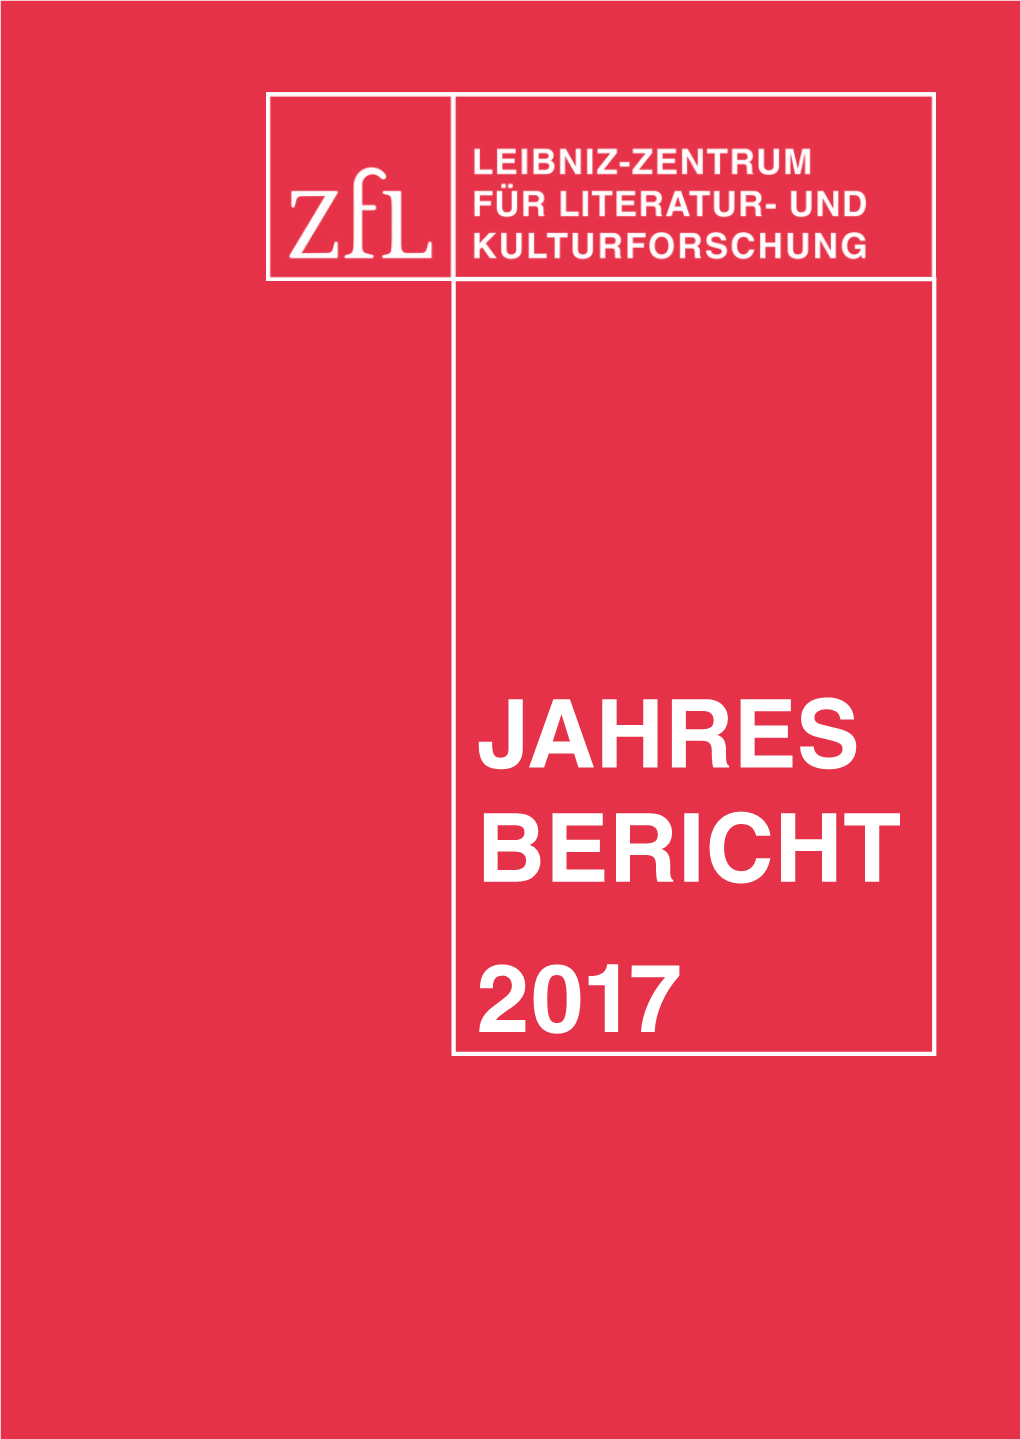 JAHRES BERICHT 2017 Impressum